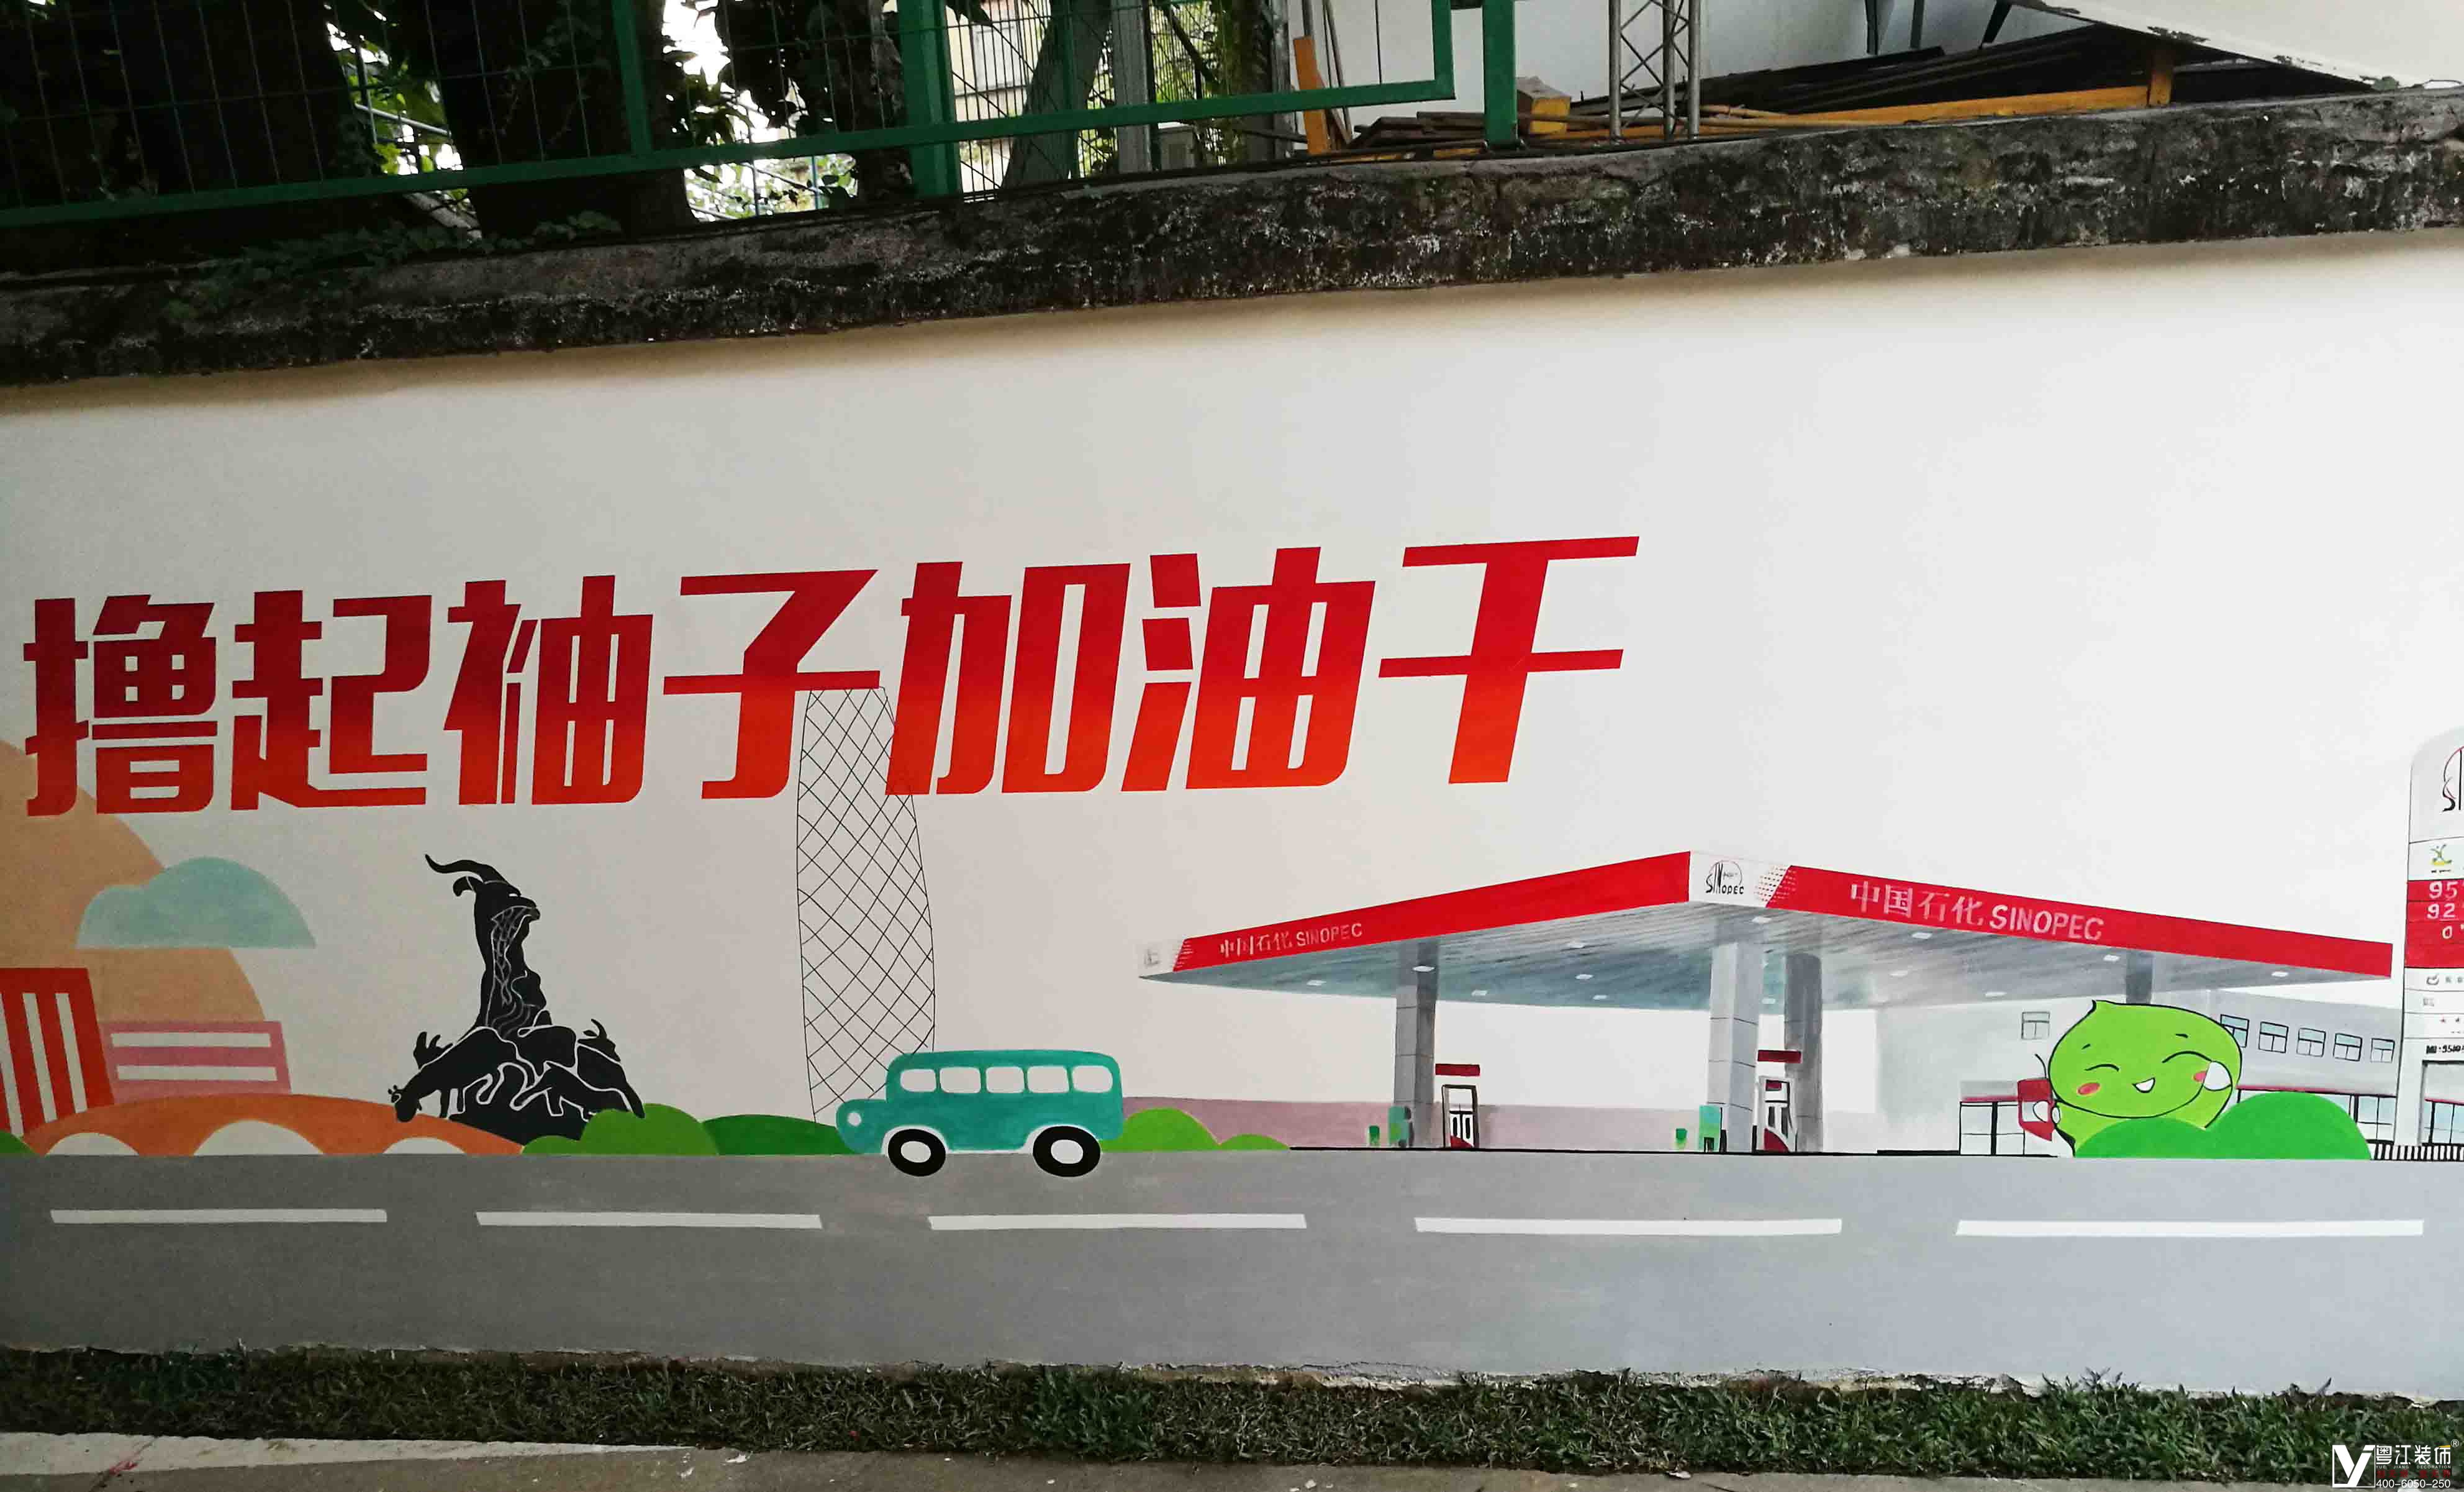 中国石化厂区围墙企业文化主题彩绘